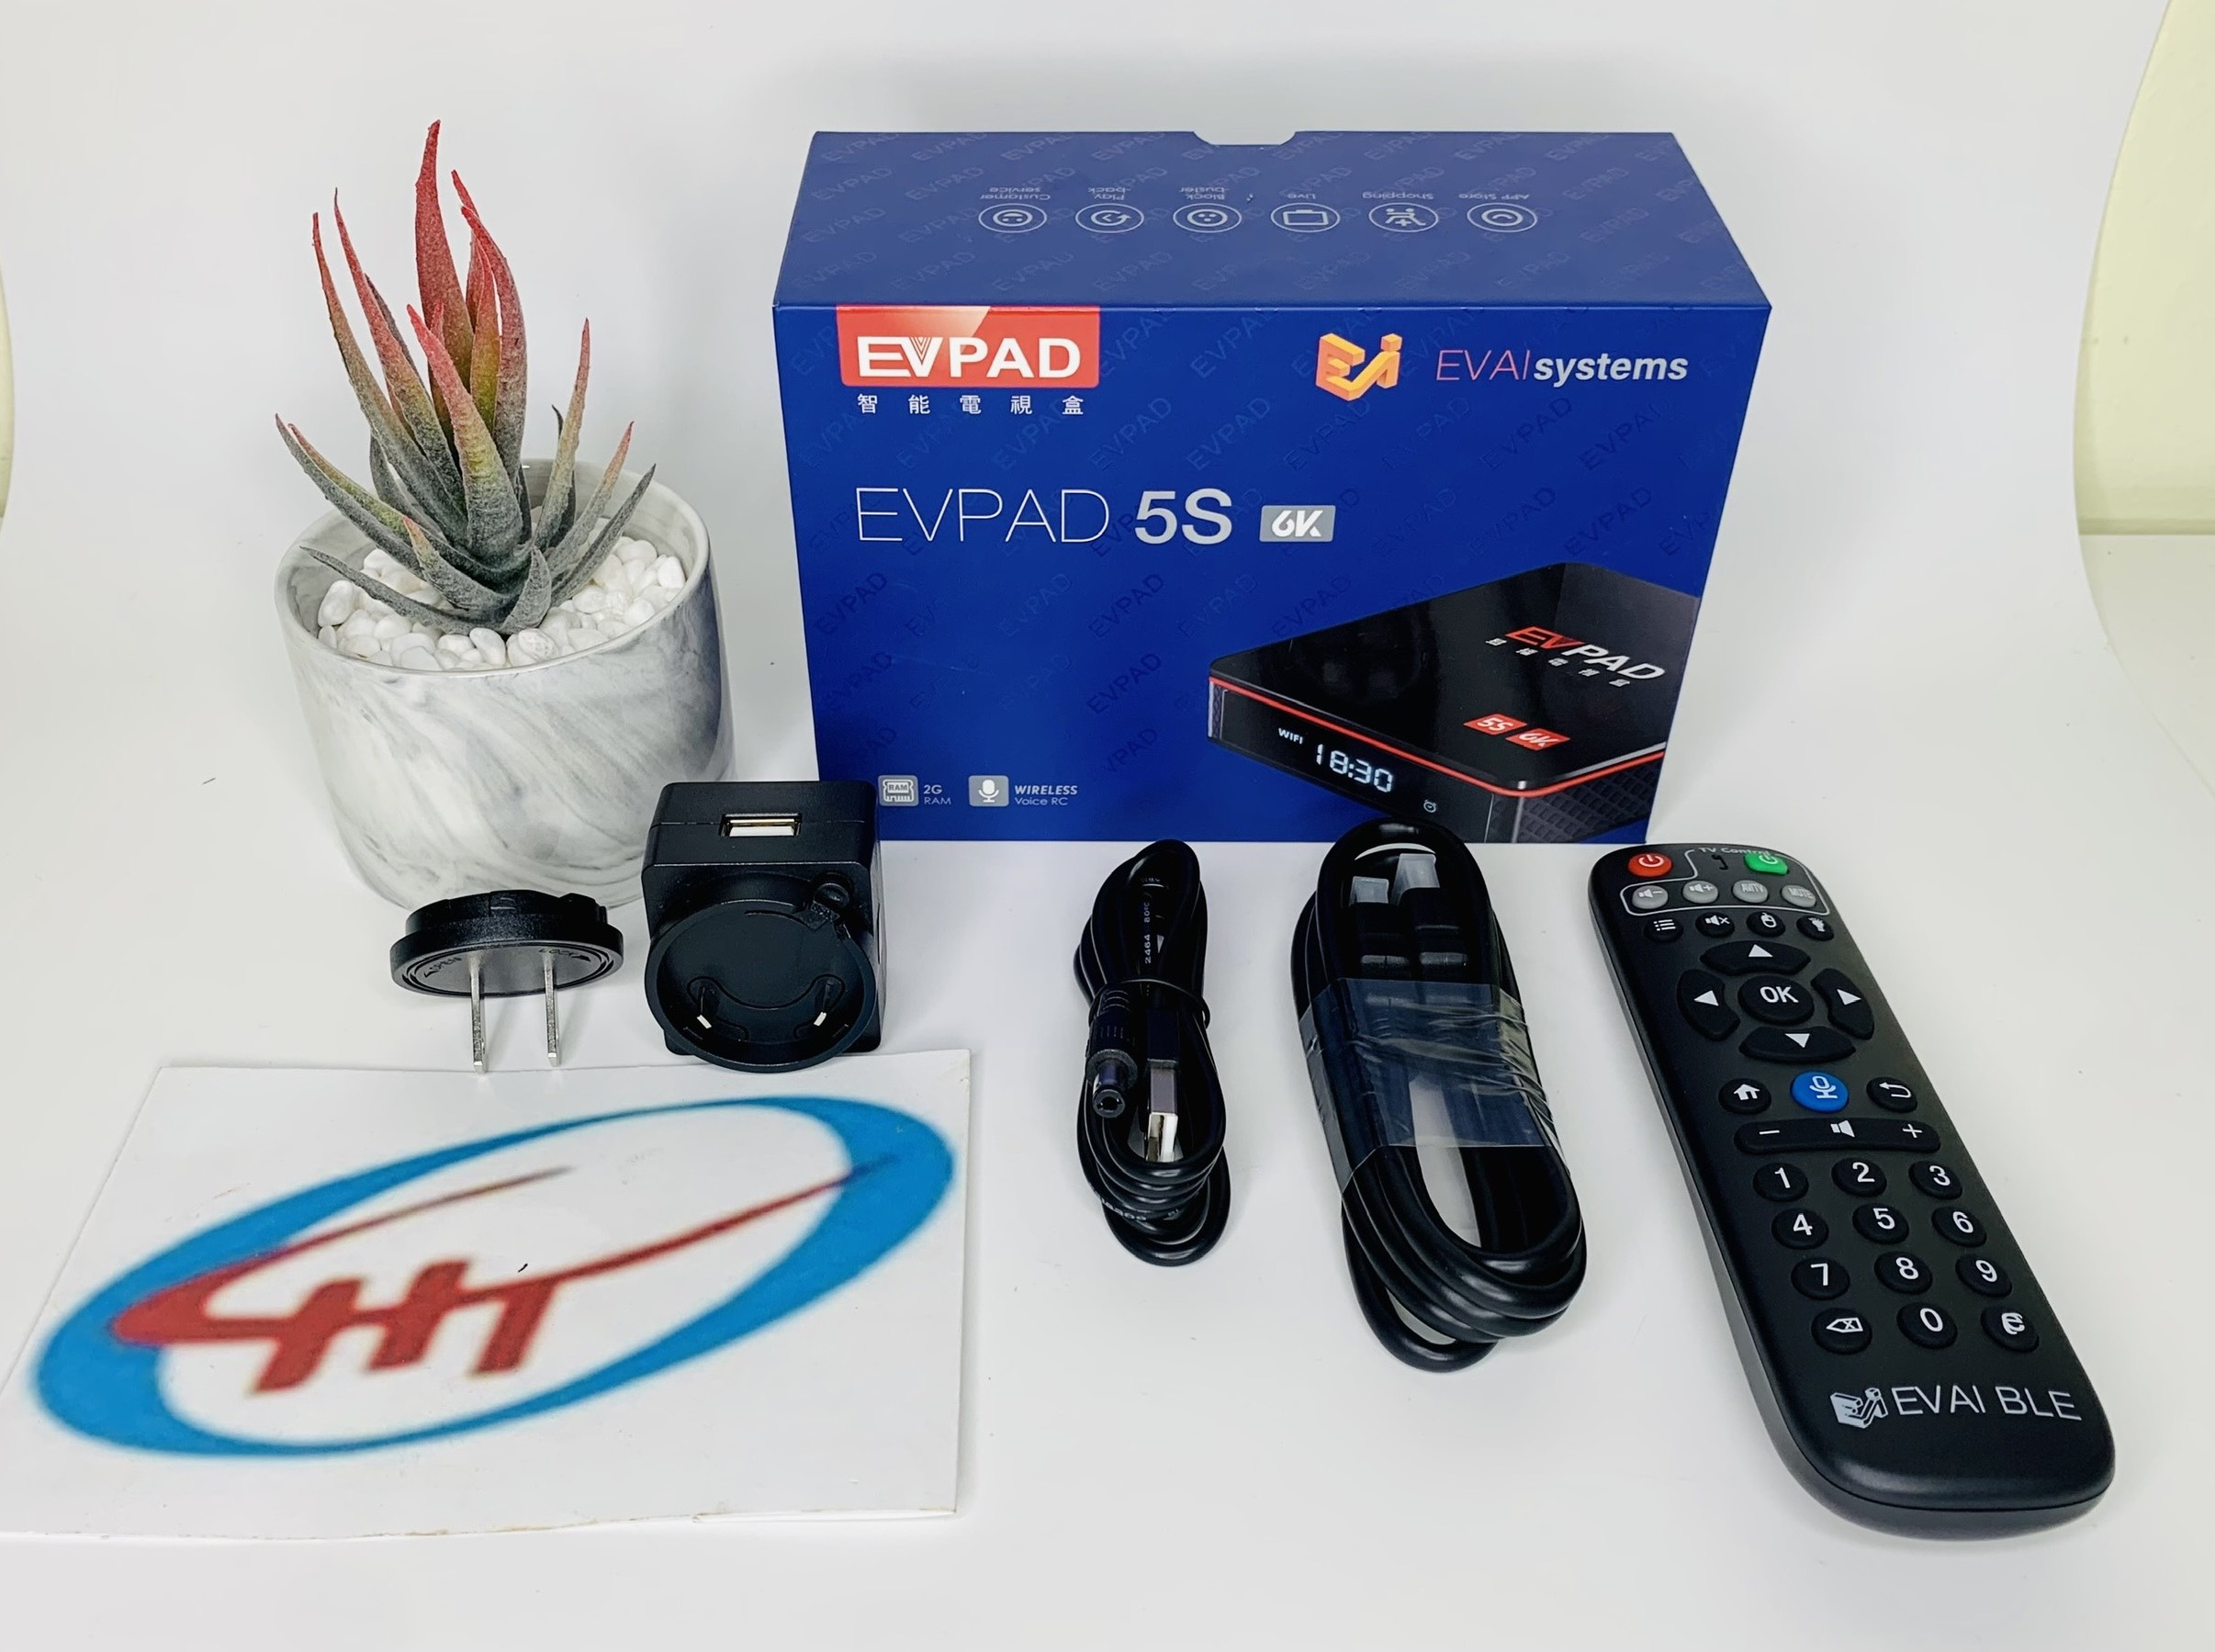 smart tivi-box EVPAD 5S - XEM TRUYỀN HÌNH 14 QUỐC GIA VỚI HƠN 1100 KÊNH, Hàng Chính Hãng.